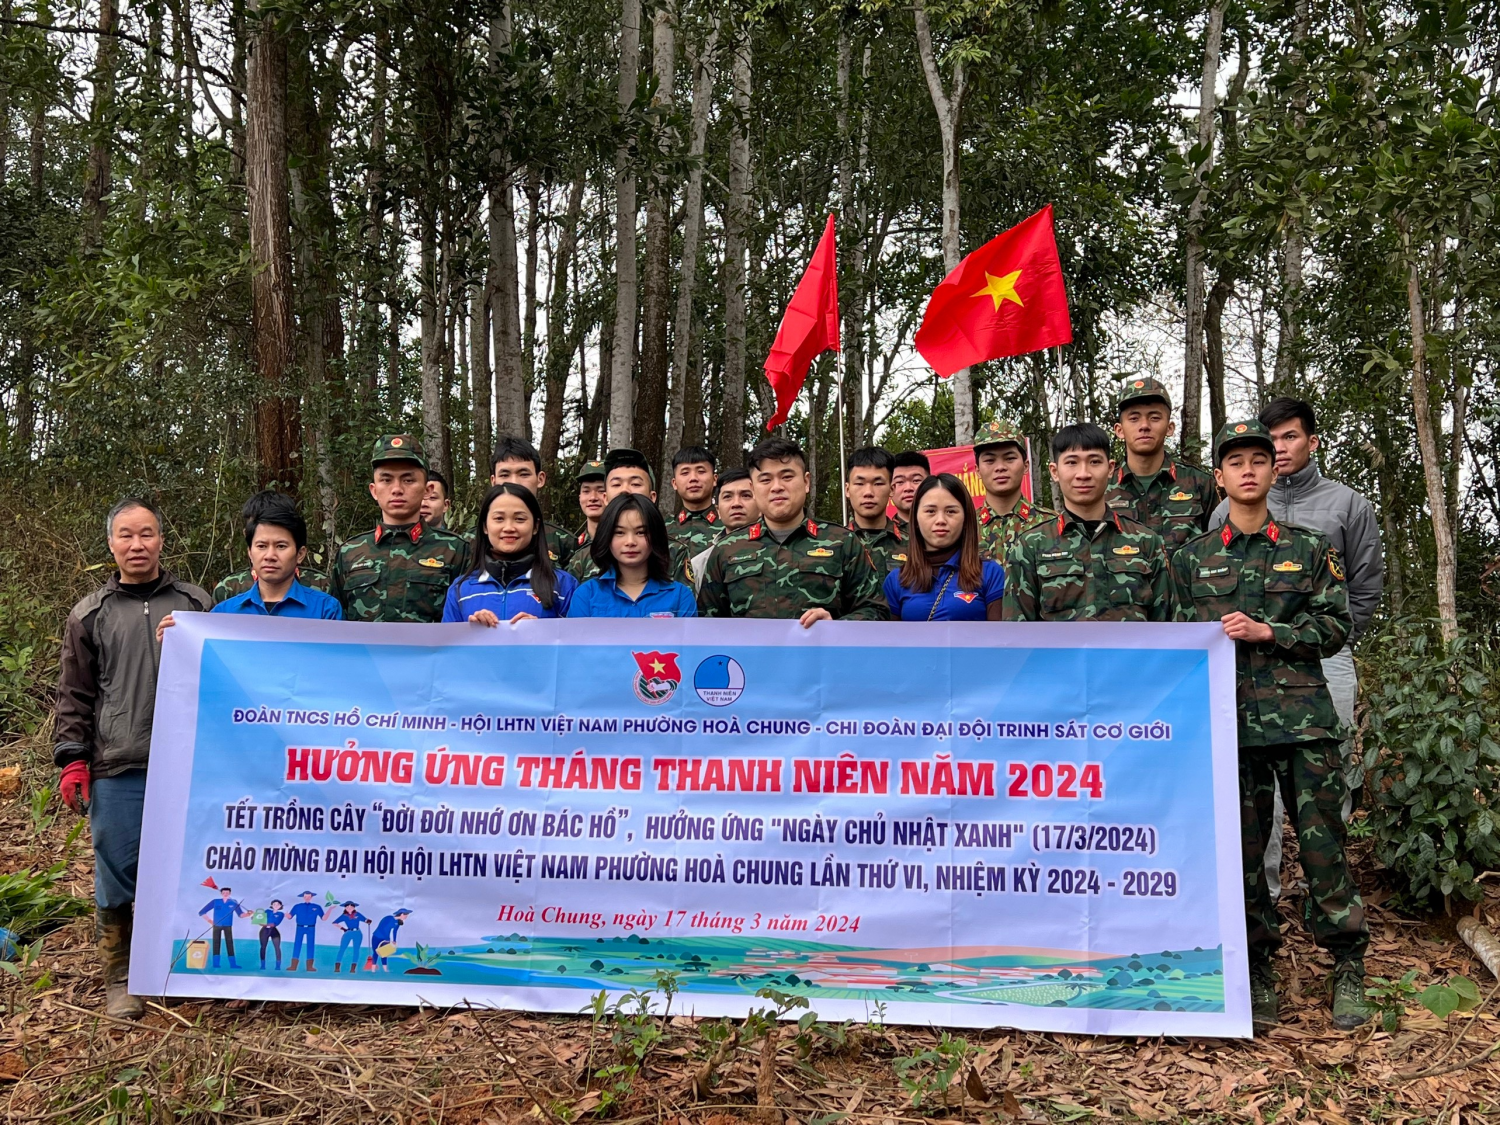 Đoàn phường Hoà Chung phối hợp với Chi Đoàn đại đội trinh sát cơ giới trồng cây xanh